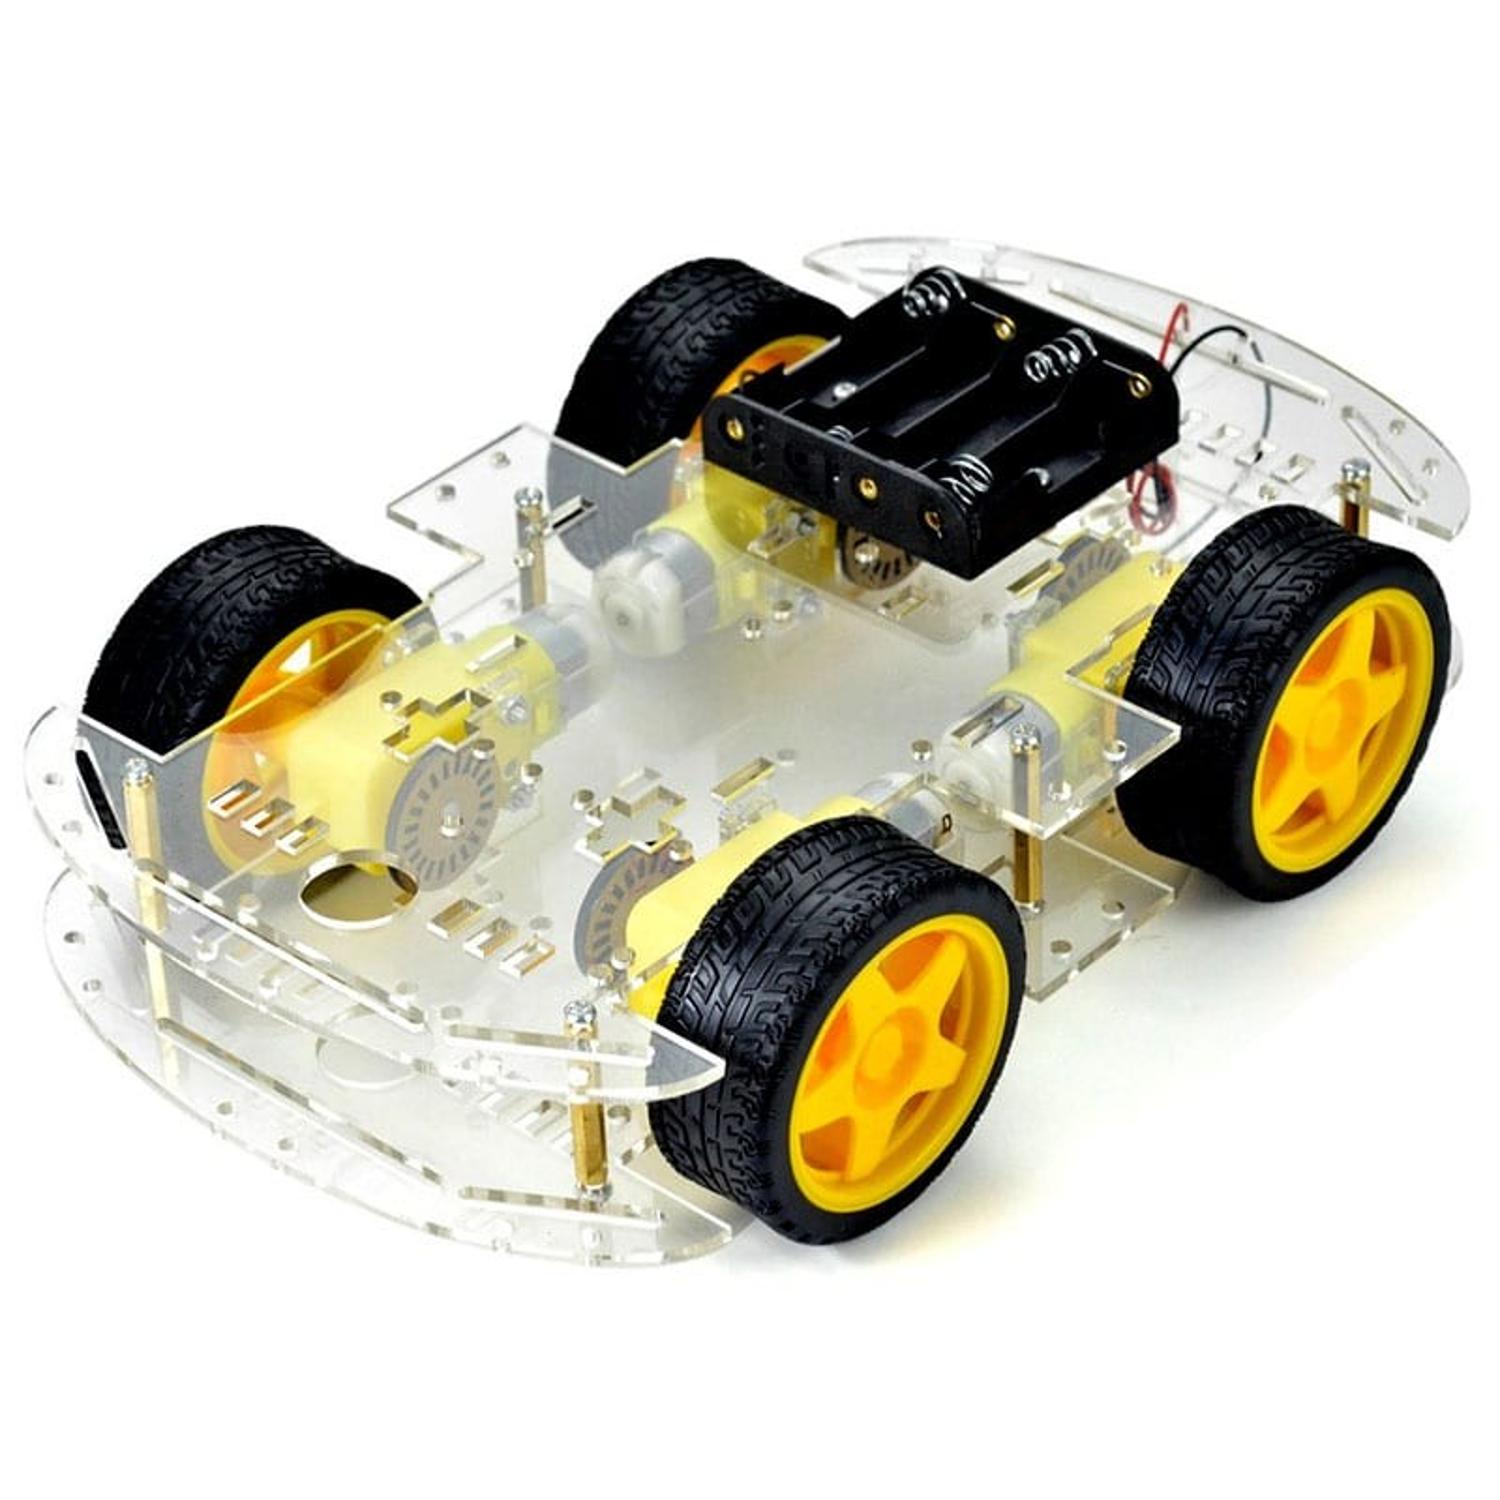 Kit Carro Robot 4WD Chasis Acrilico